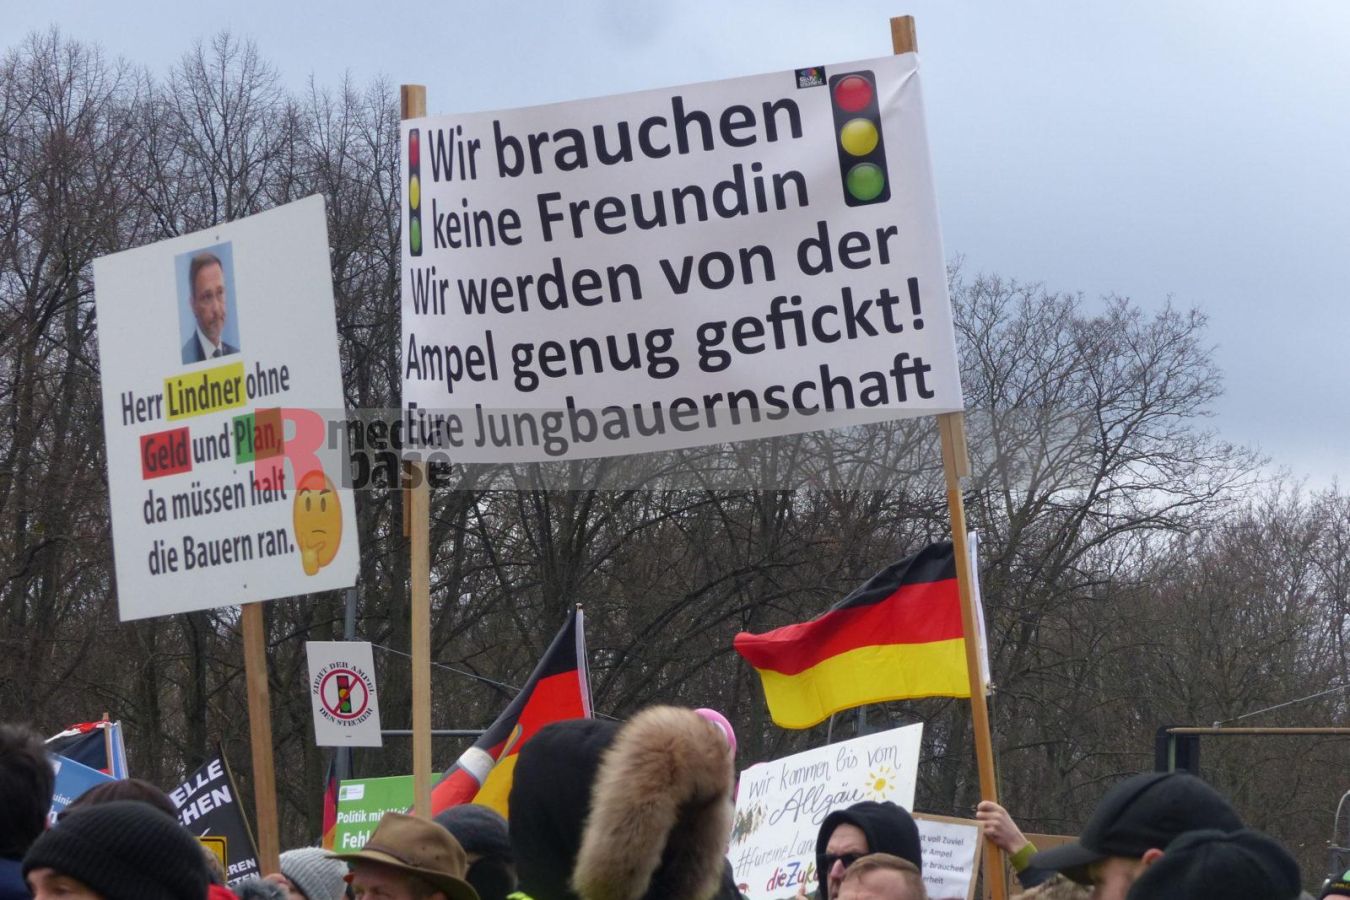 Bauernprotest in Berlin <i>Bild Denner/R-mediabase</i> <br><a href=/confor2/?bld=79030&pst=78995&aid=86&i1=Denner/R-mediabase>Download Bild 79030</a>  <br><a href=/?p=78995>Zum Beitrag 78995</a>